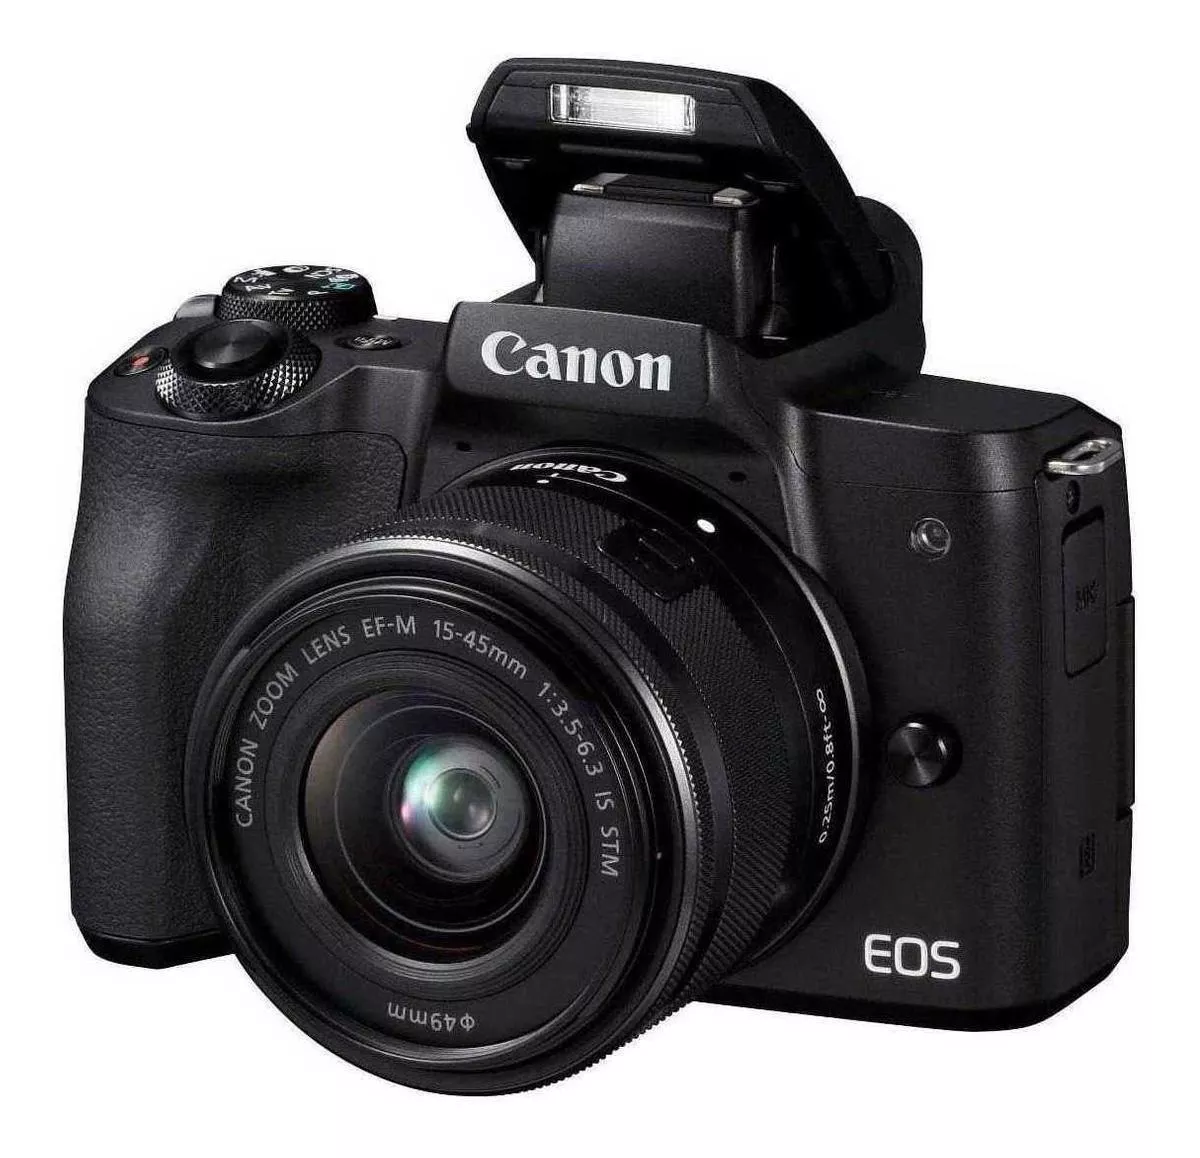  Canon Eos Kit M50 15-45mm Is Stm Sin Espejo Color Negro